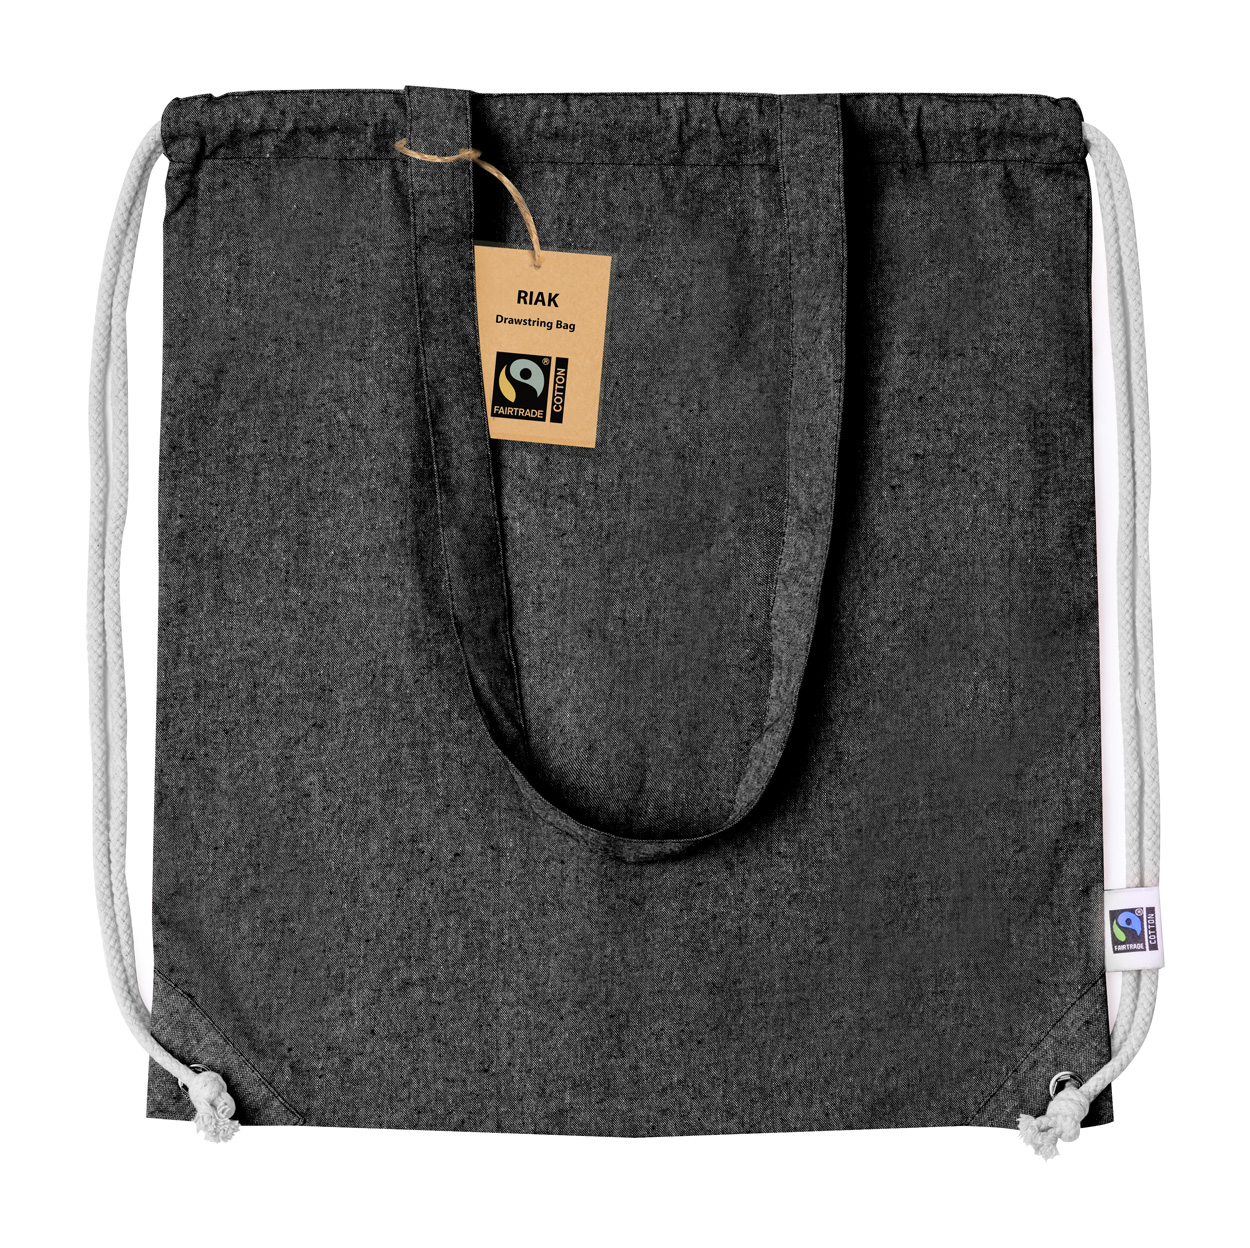 Riak fairtrade downloadable bag - black